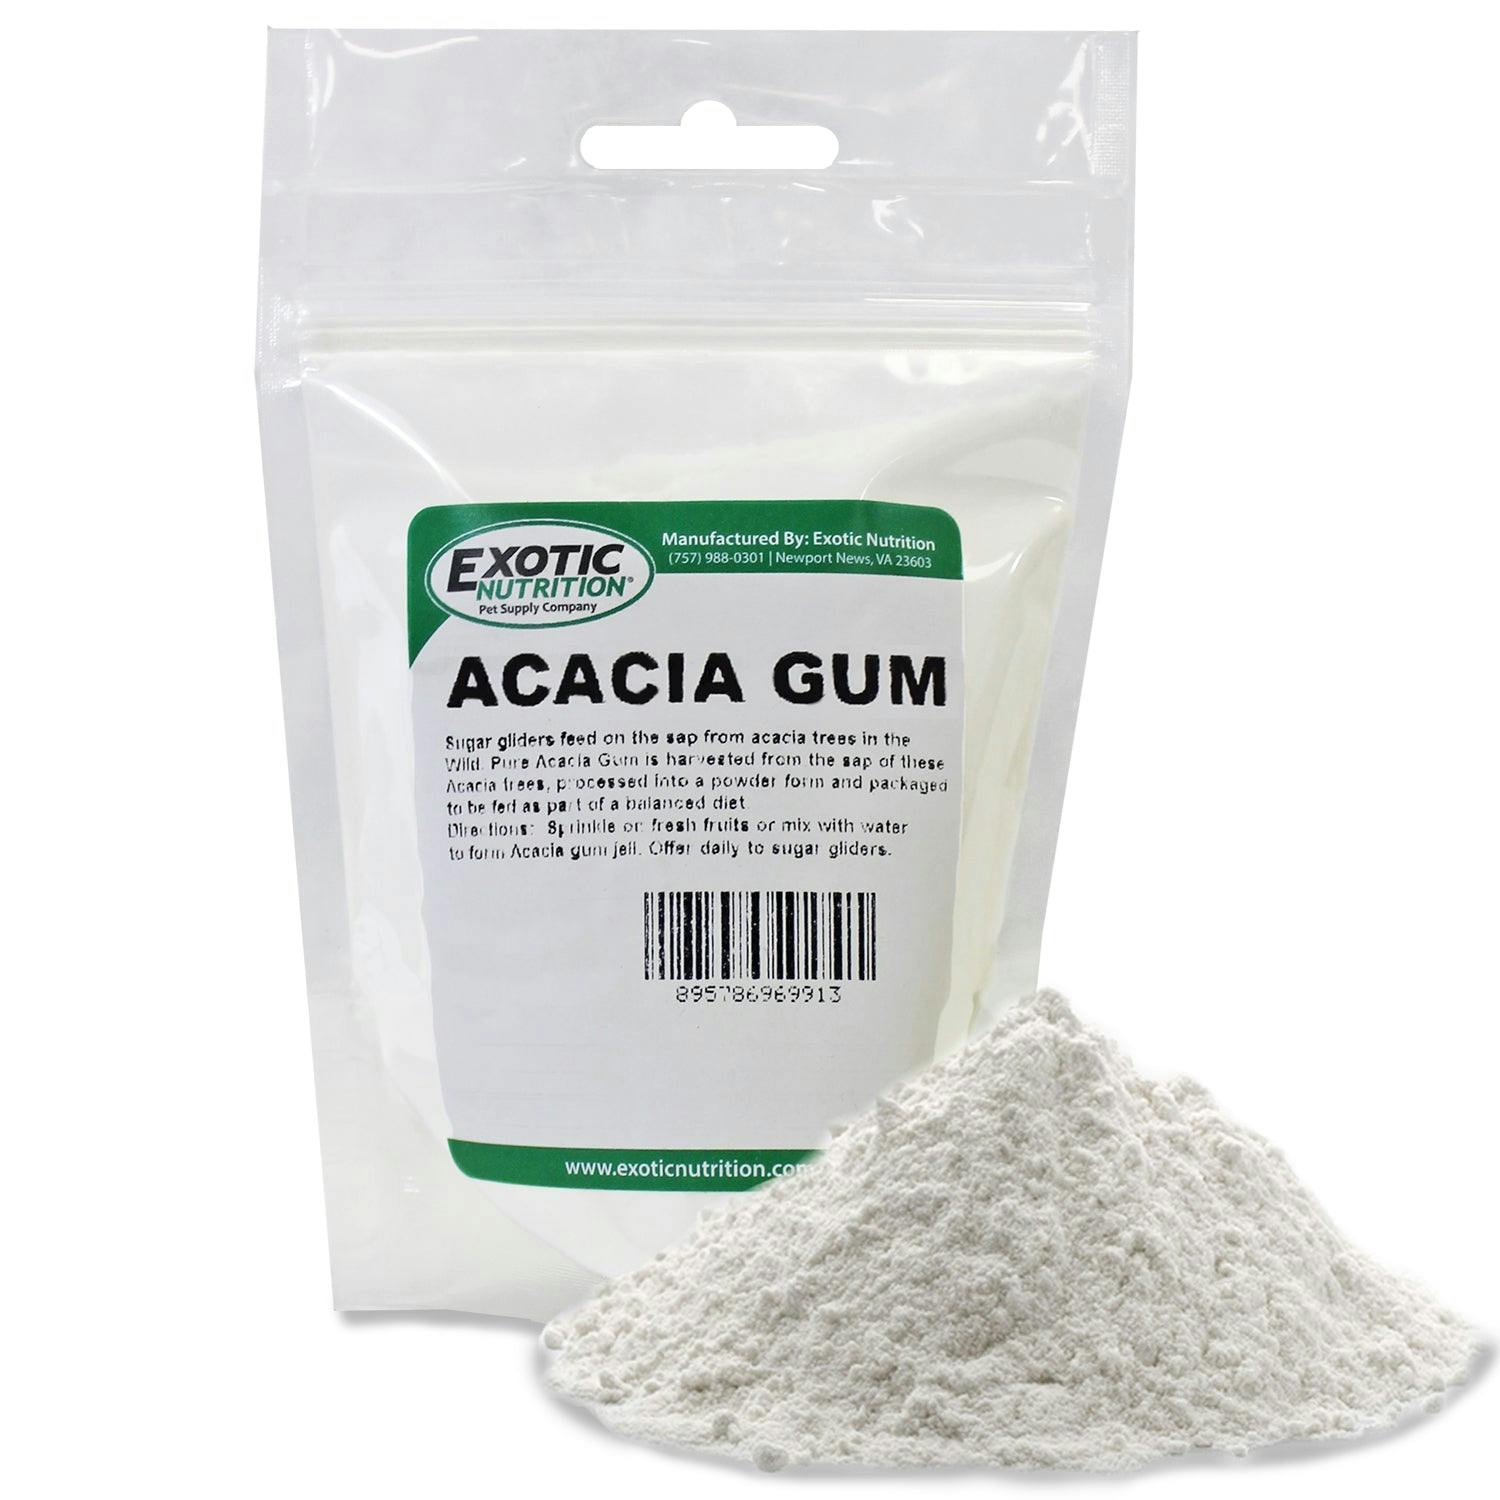 Acacia Gum - Image 0